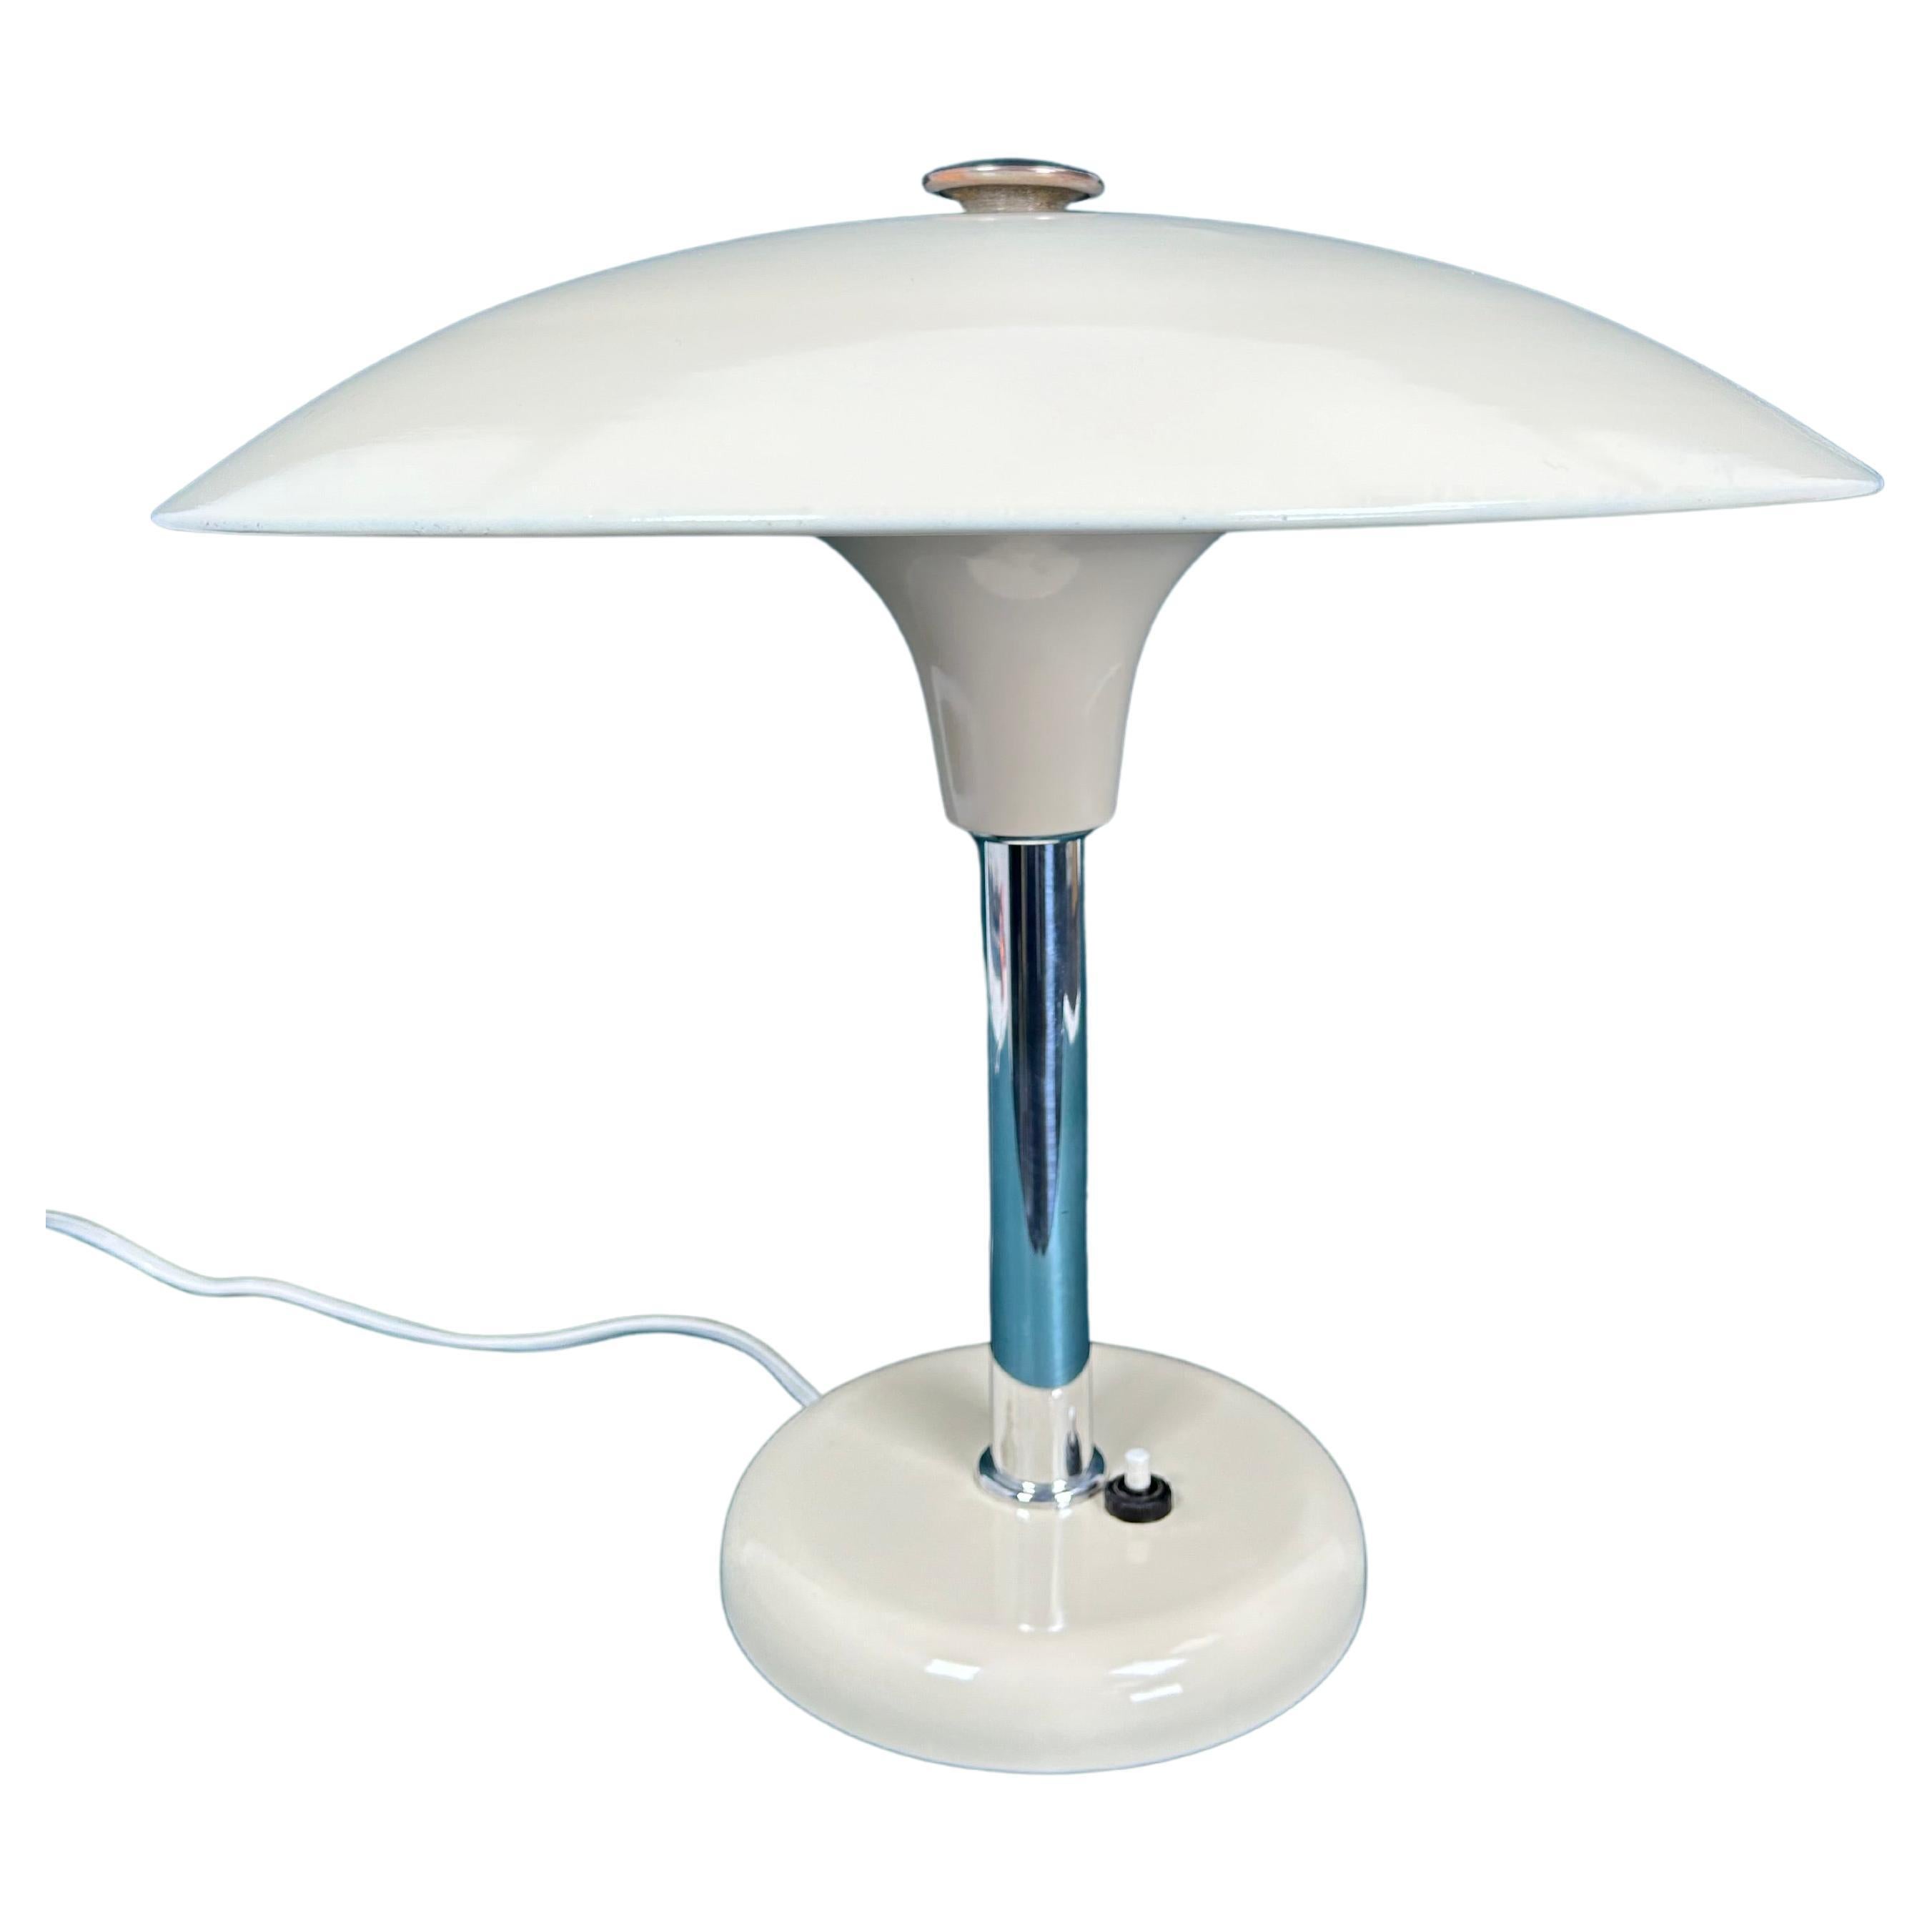 Art deco table lamp by Max Schumacher 1934 for Metallwerk Werner Schröder For Sale